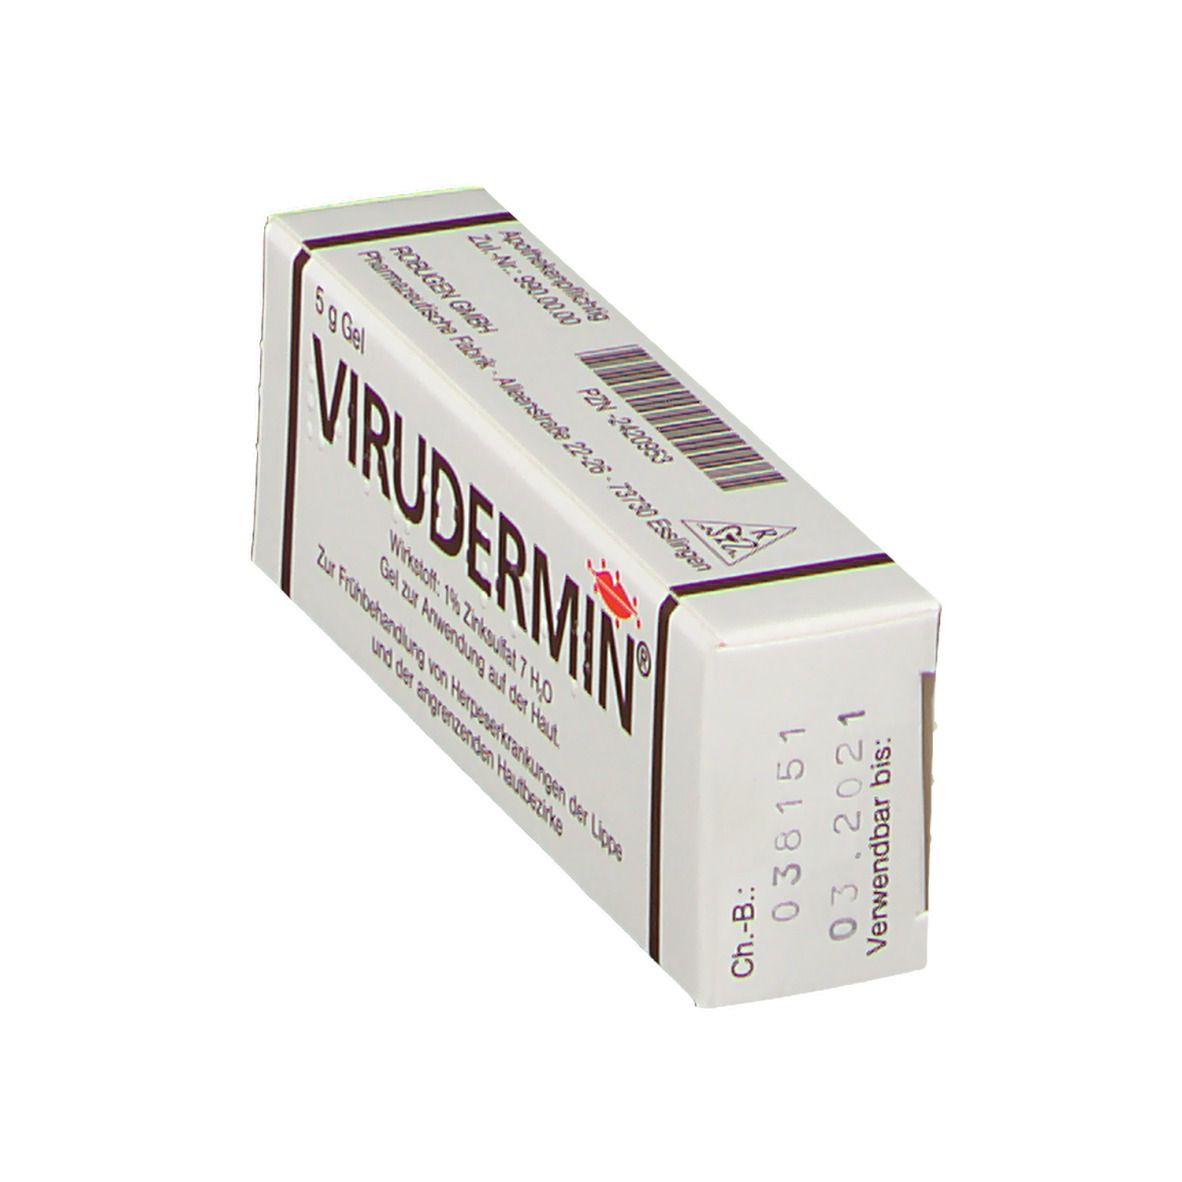 Virudermin® Gel